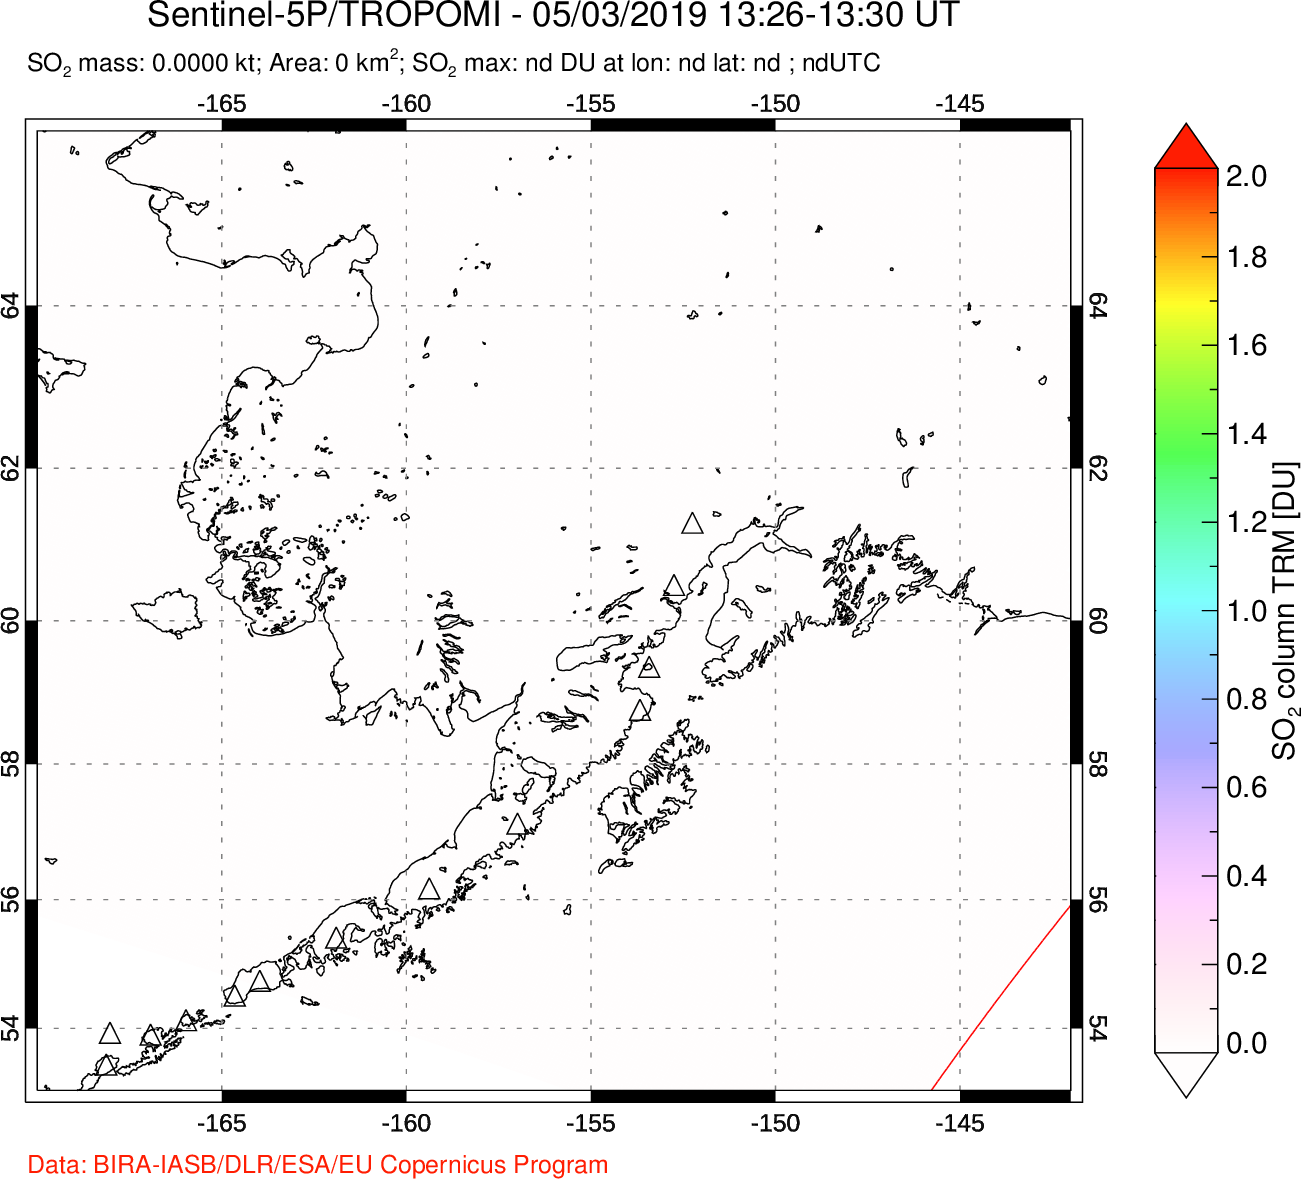 A sulfur dioxide image over Alaska, USA on May 03, 2019.